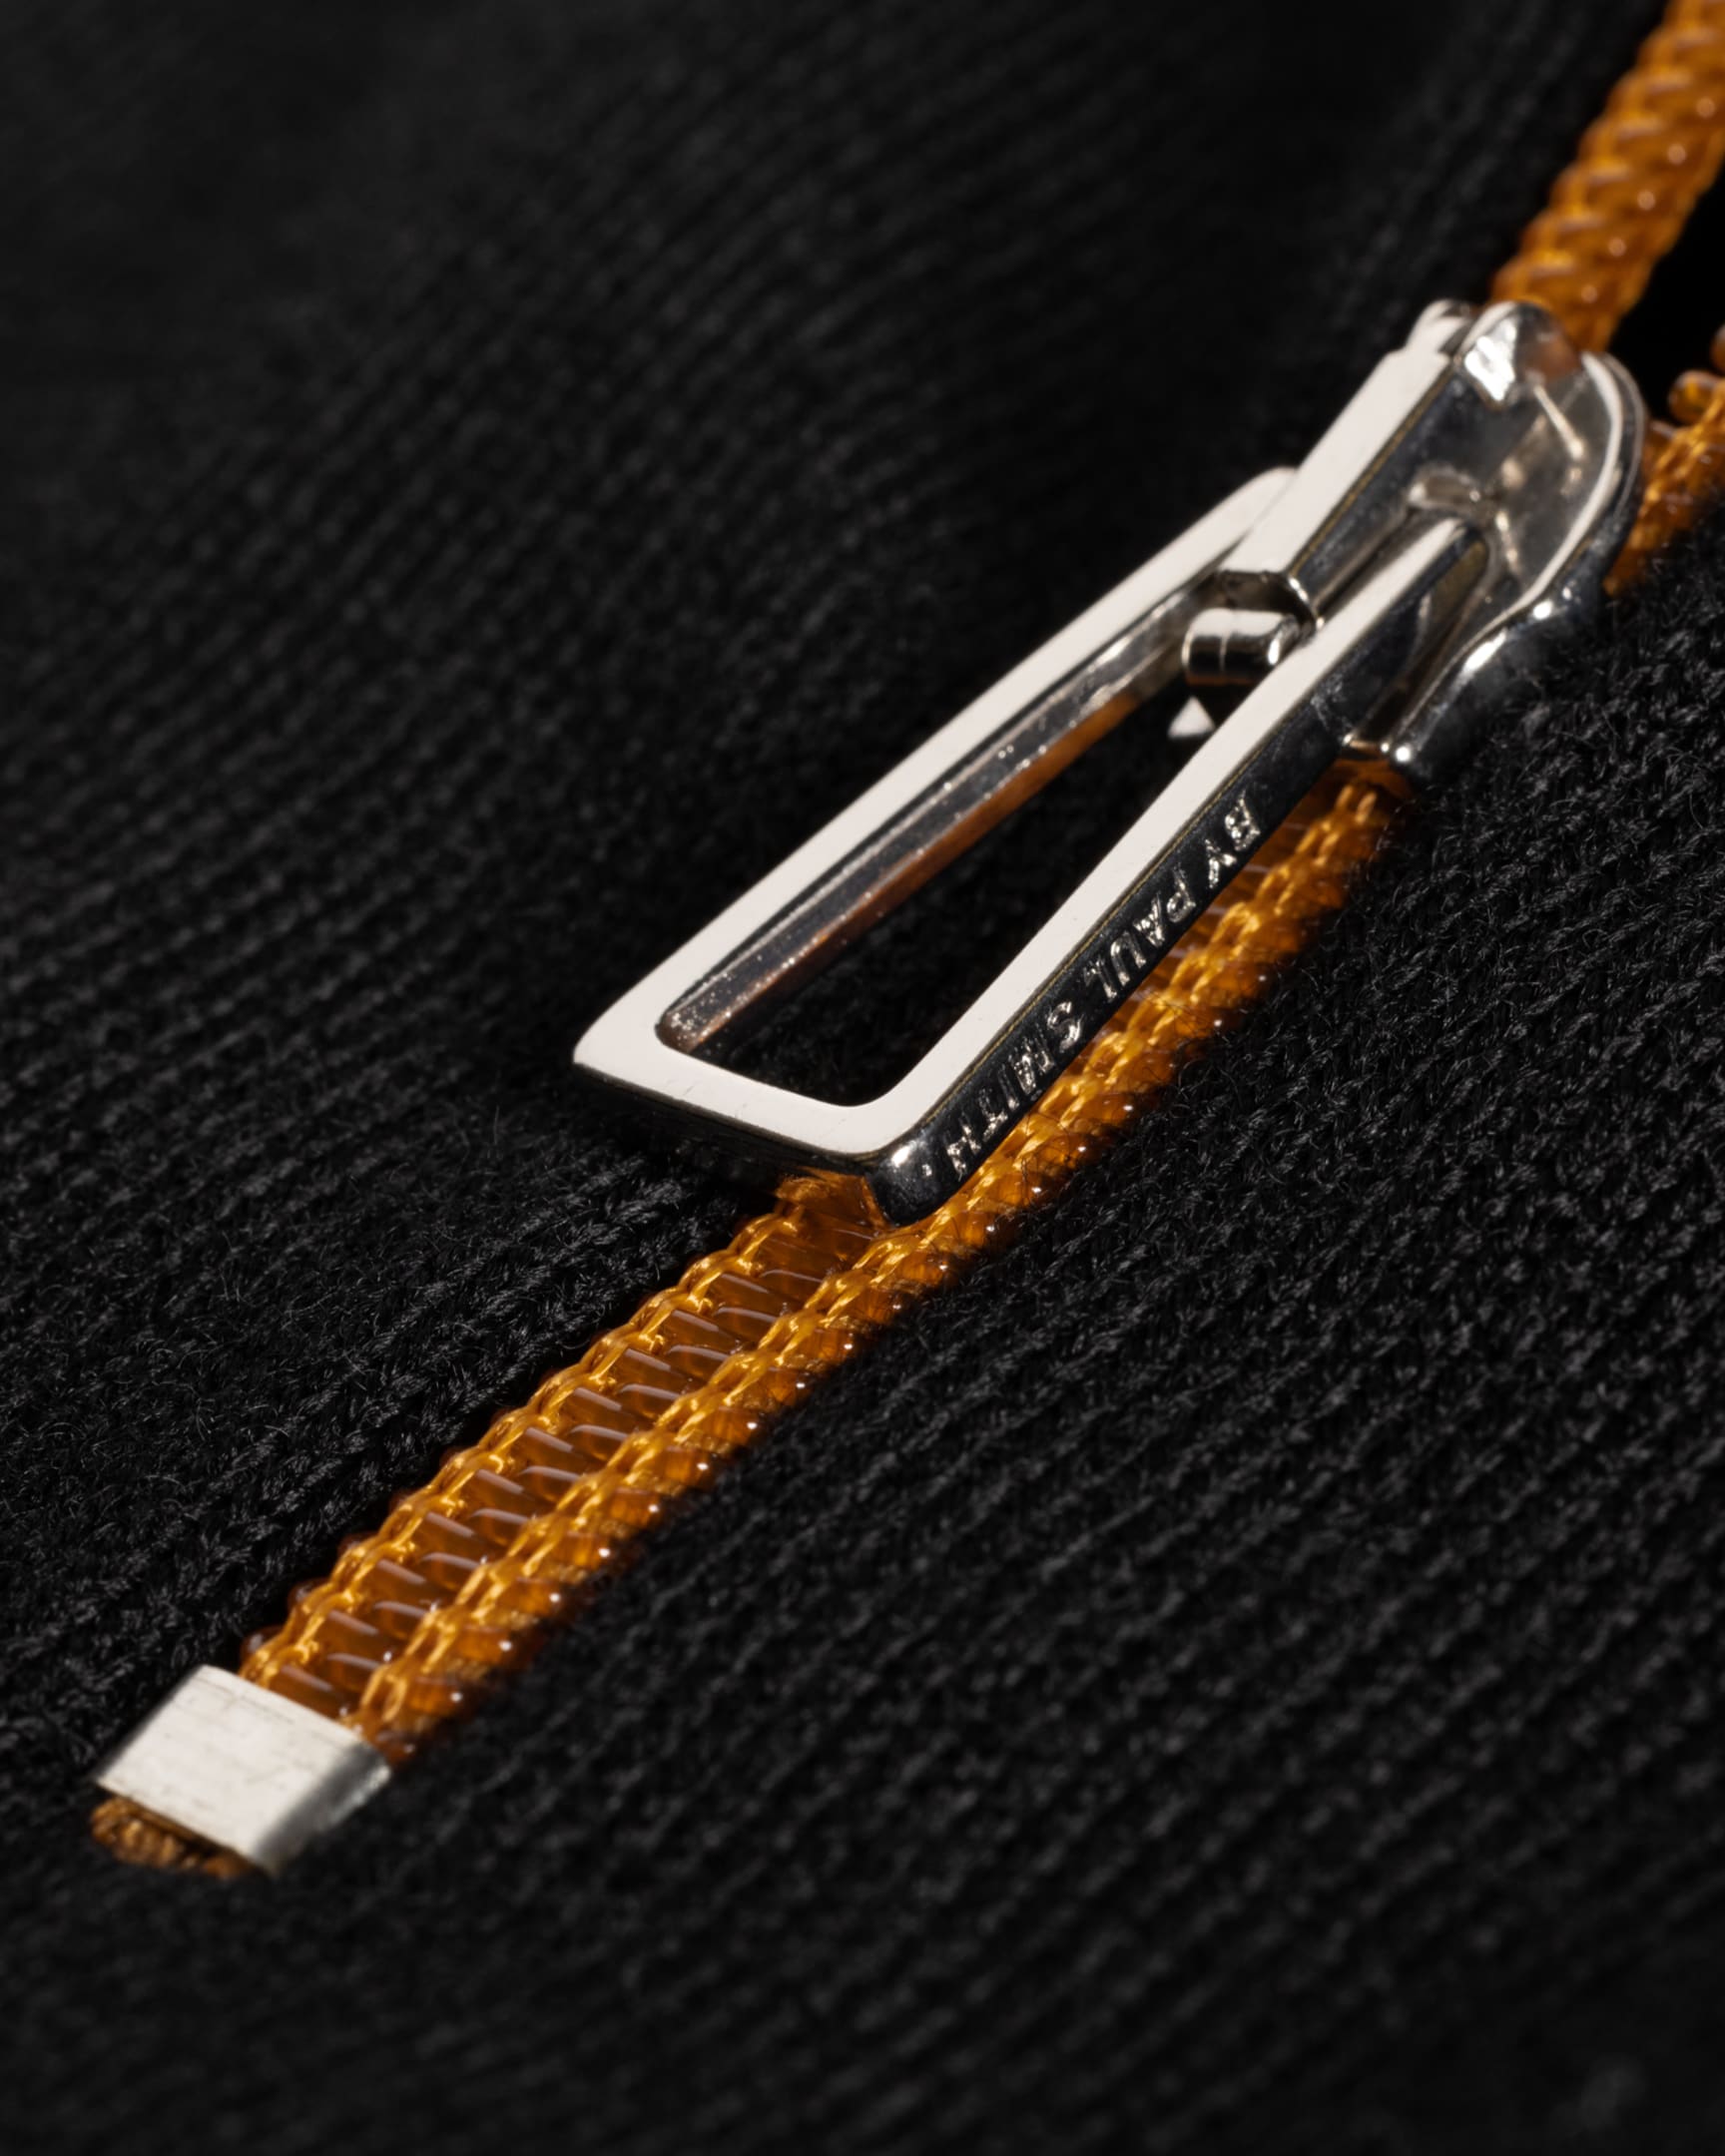 Detail View - Black And Orange Merino Wool Half Zip Sweater Paul Smith